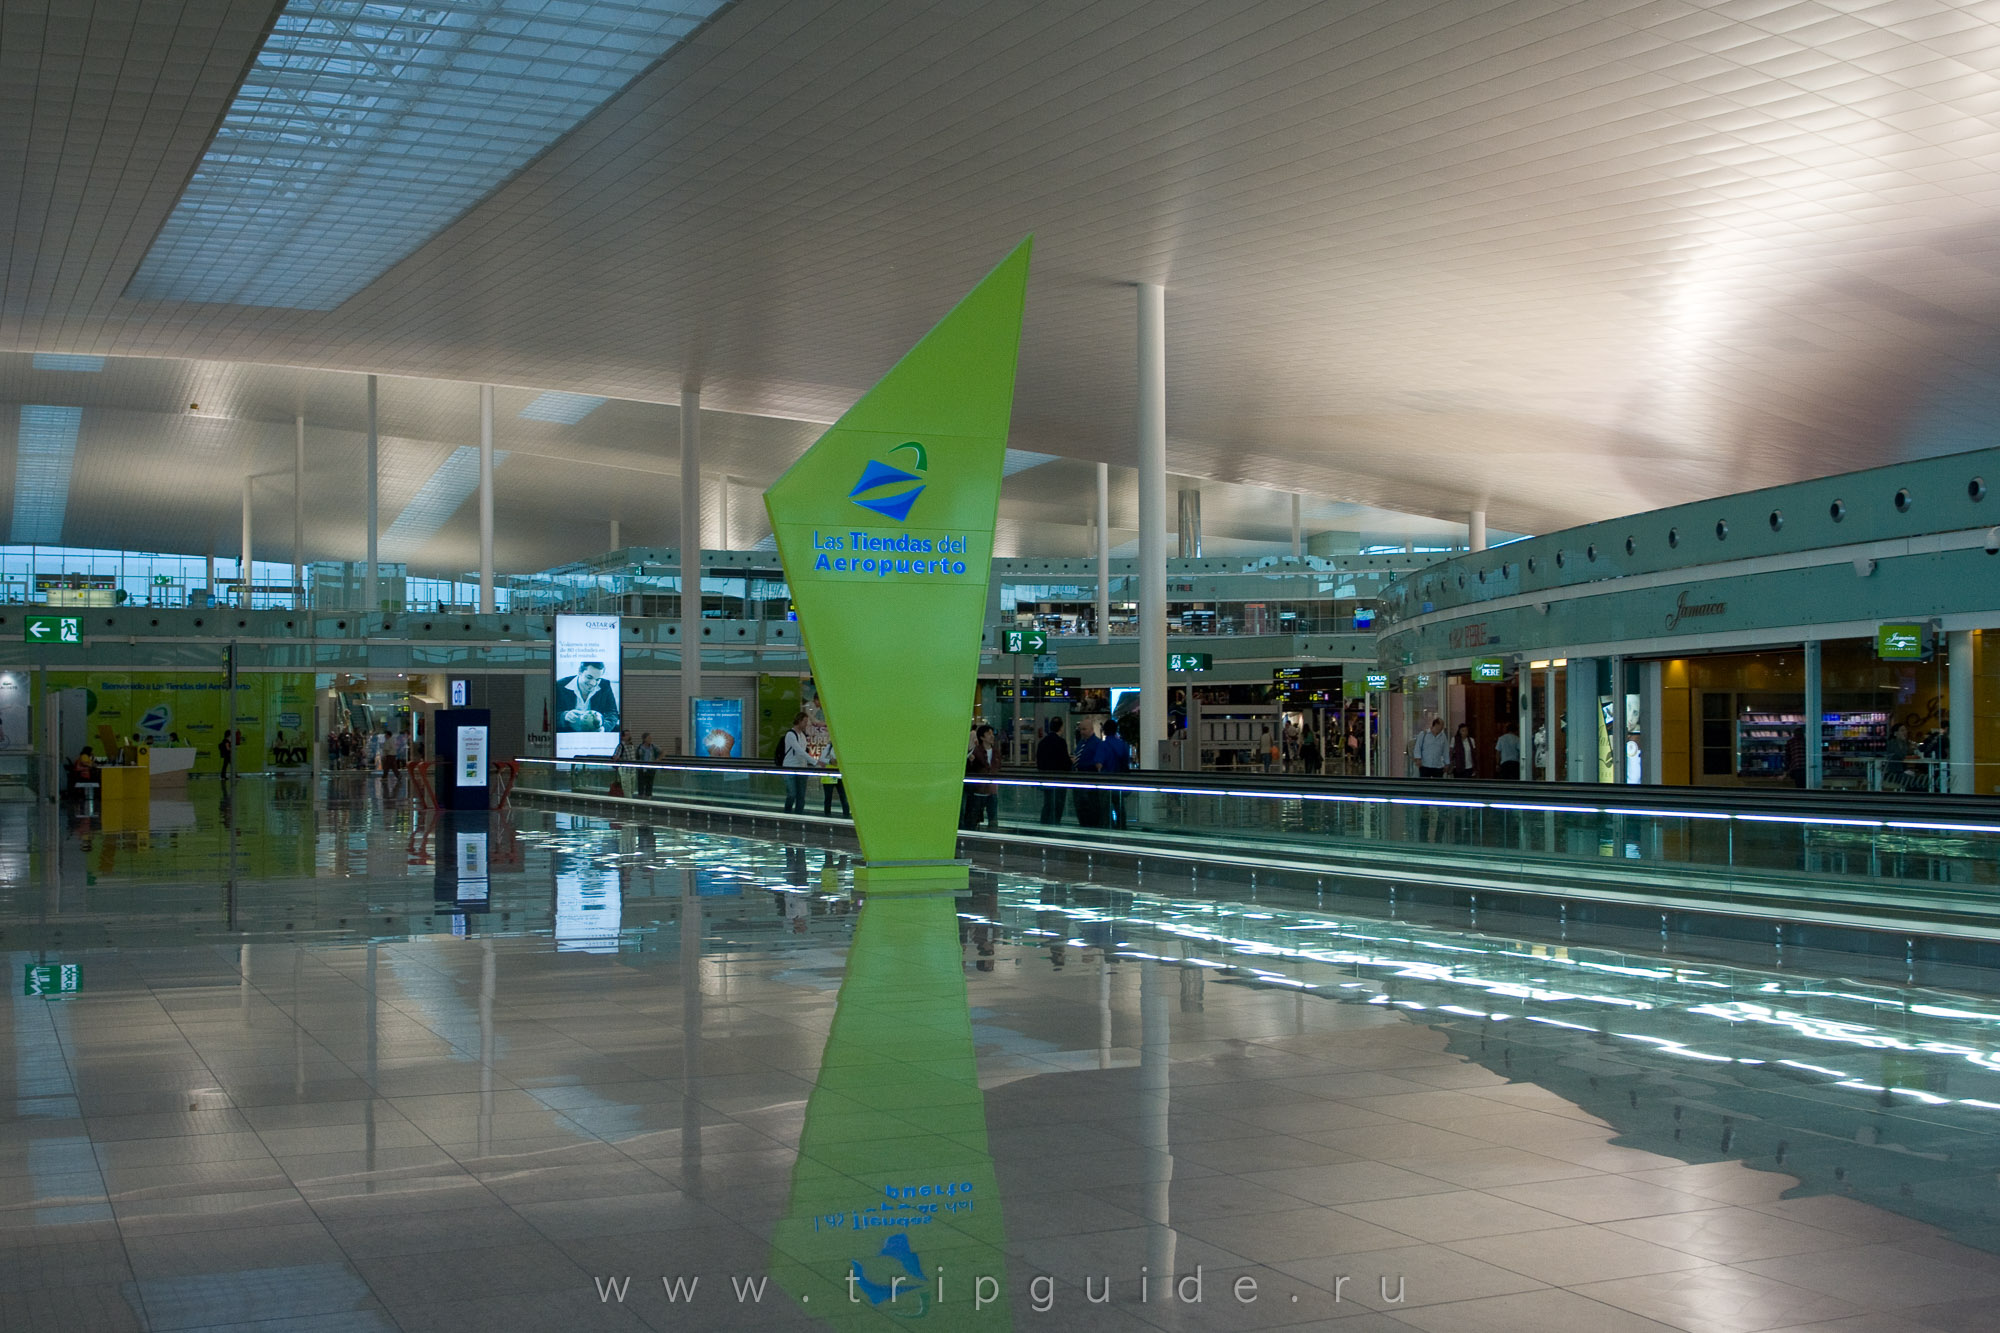 Аэропорт барселоны эль-прат — отзывы туристов, схема и структура, терминалы и дьюти-фри, табло вылета и прилёта, транспорт в город